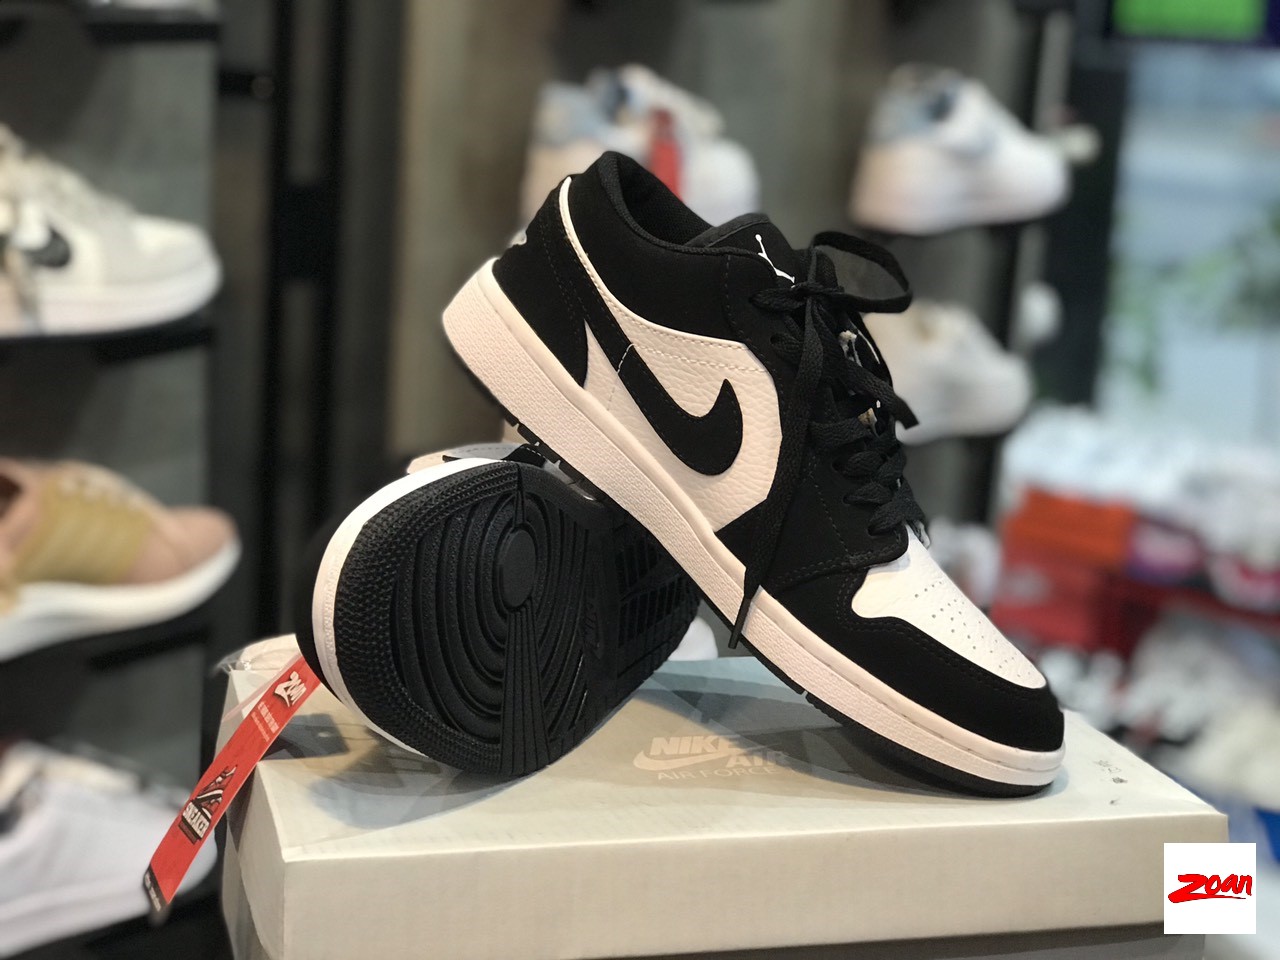 Nike Jordan 1 low đen trắng, giày Nike cổ thấp đen trắng